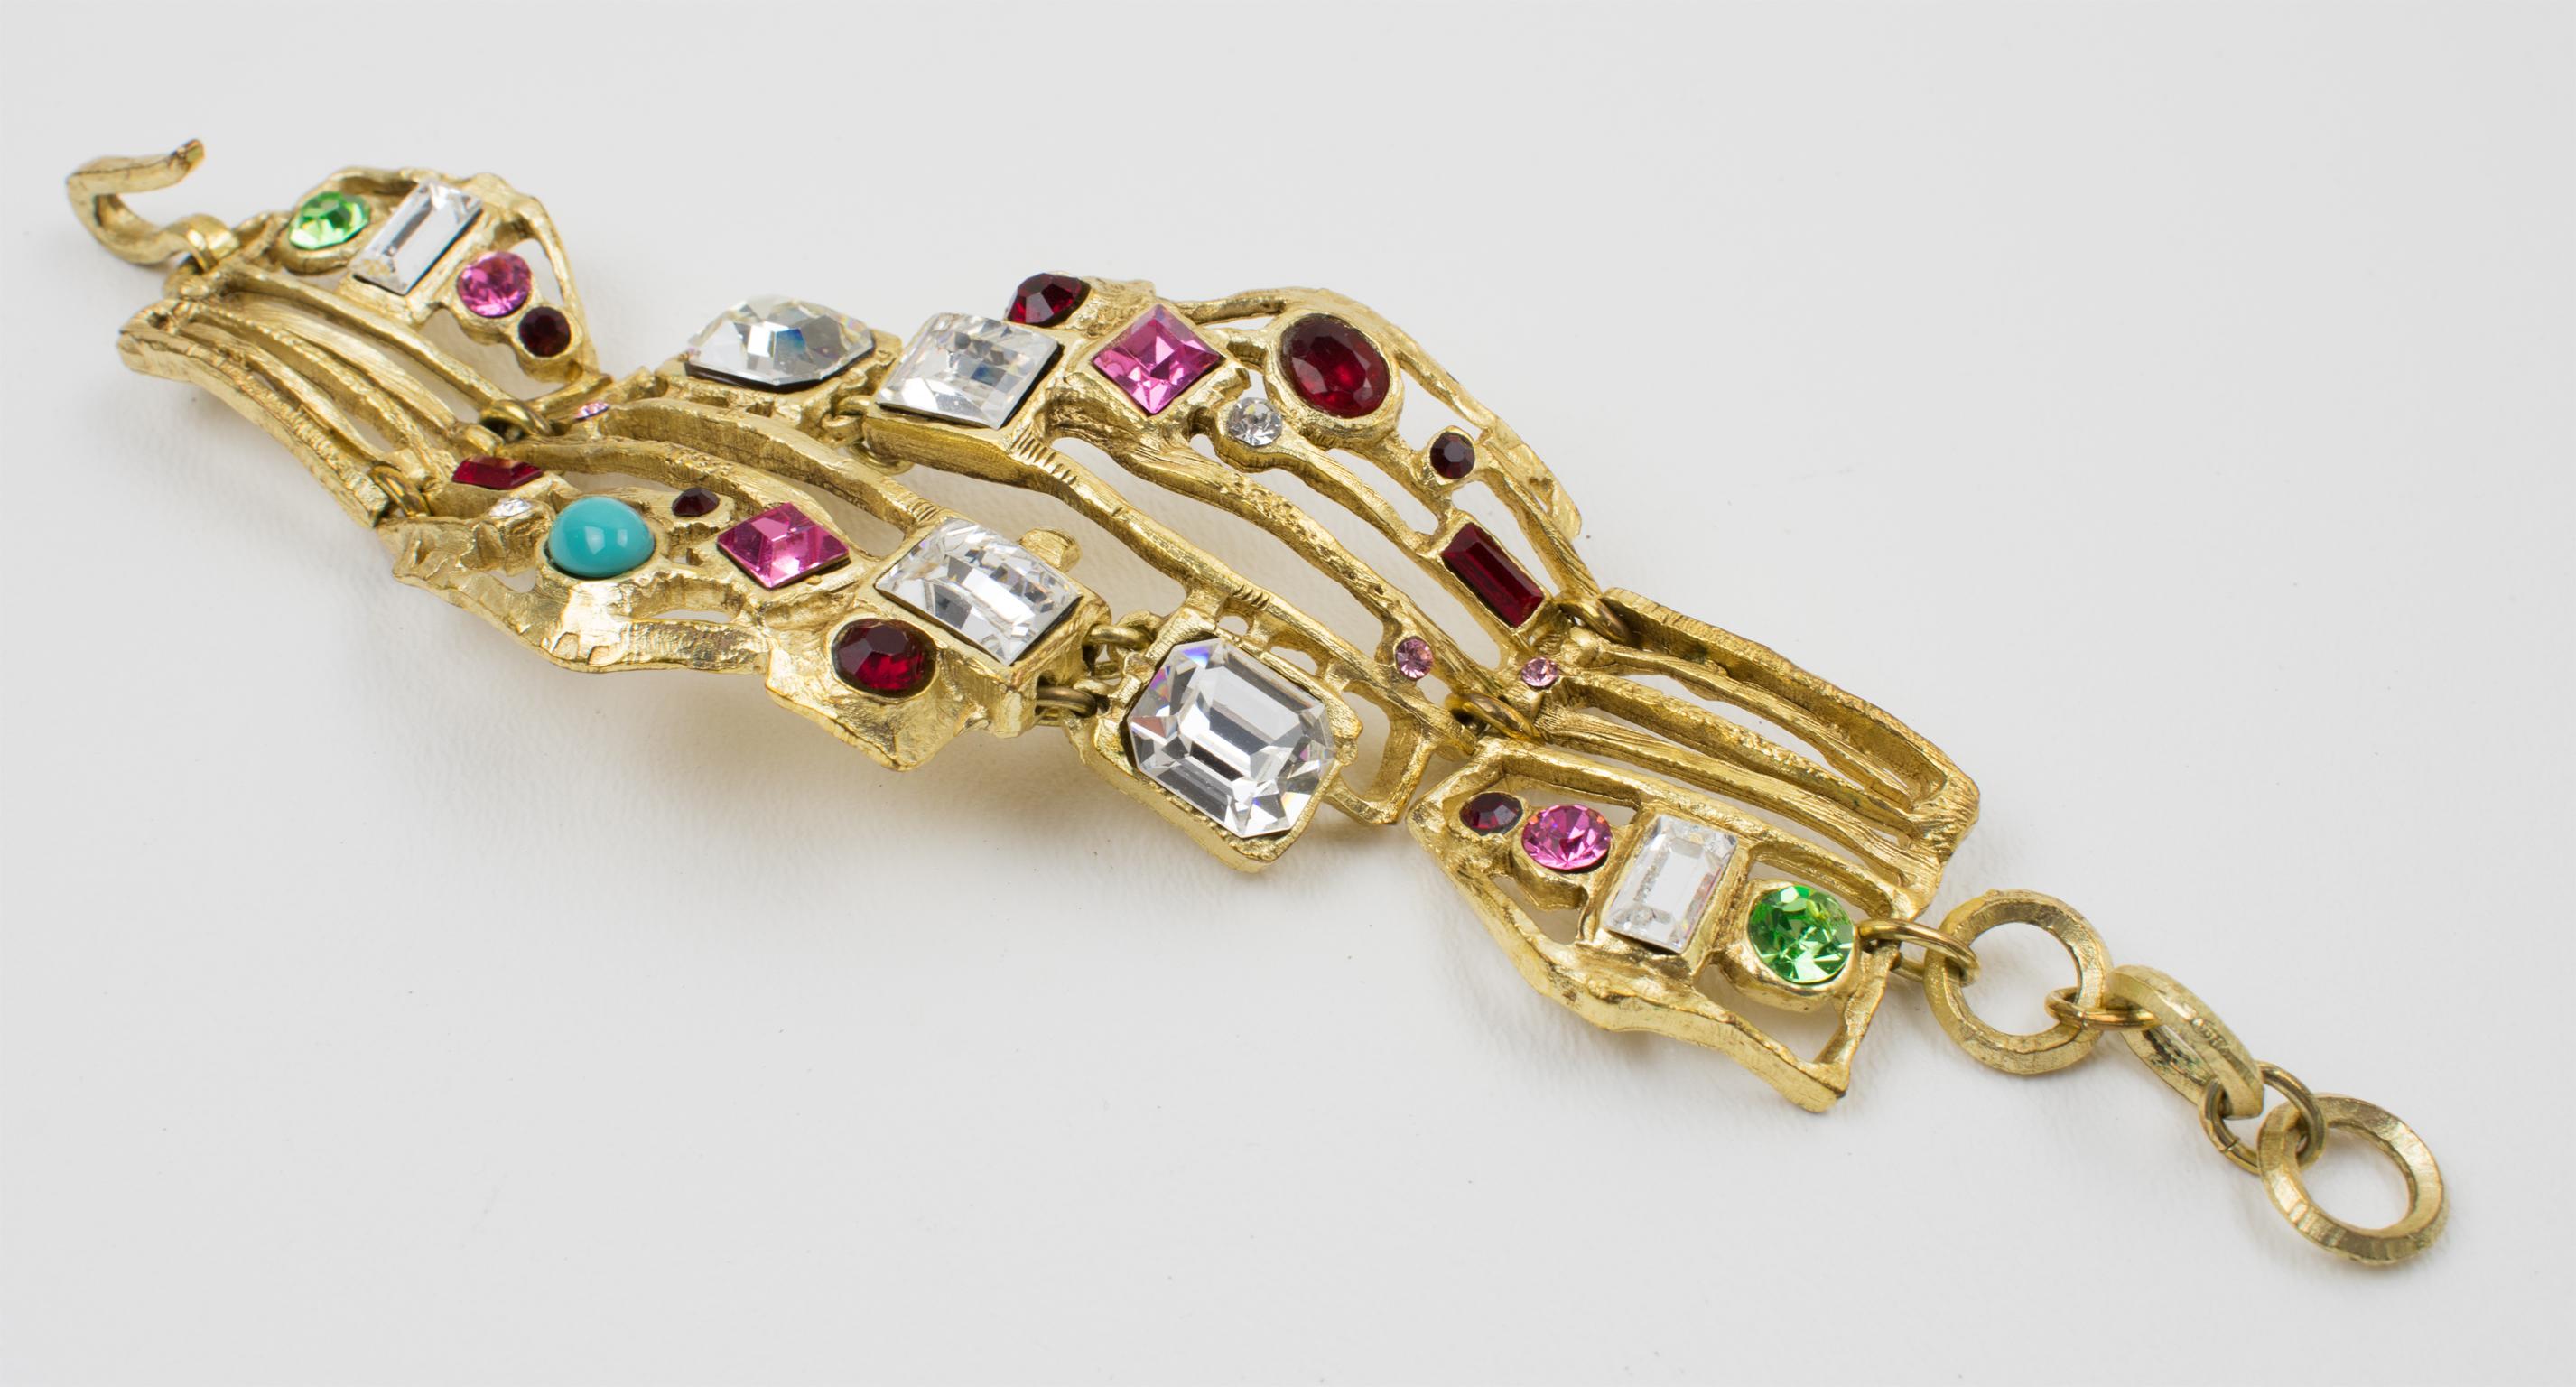 Ce bracelet à maillons sophistiqué de Christian Lacroix Paris présente des détails ornementaux baroques au design brutaliste. Le métal doré semi-mat ciselé et transparent avec encadrement de texture est agrémenté de strass en cristal de différentes